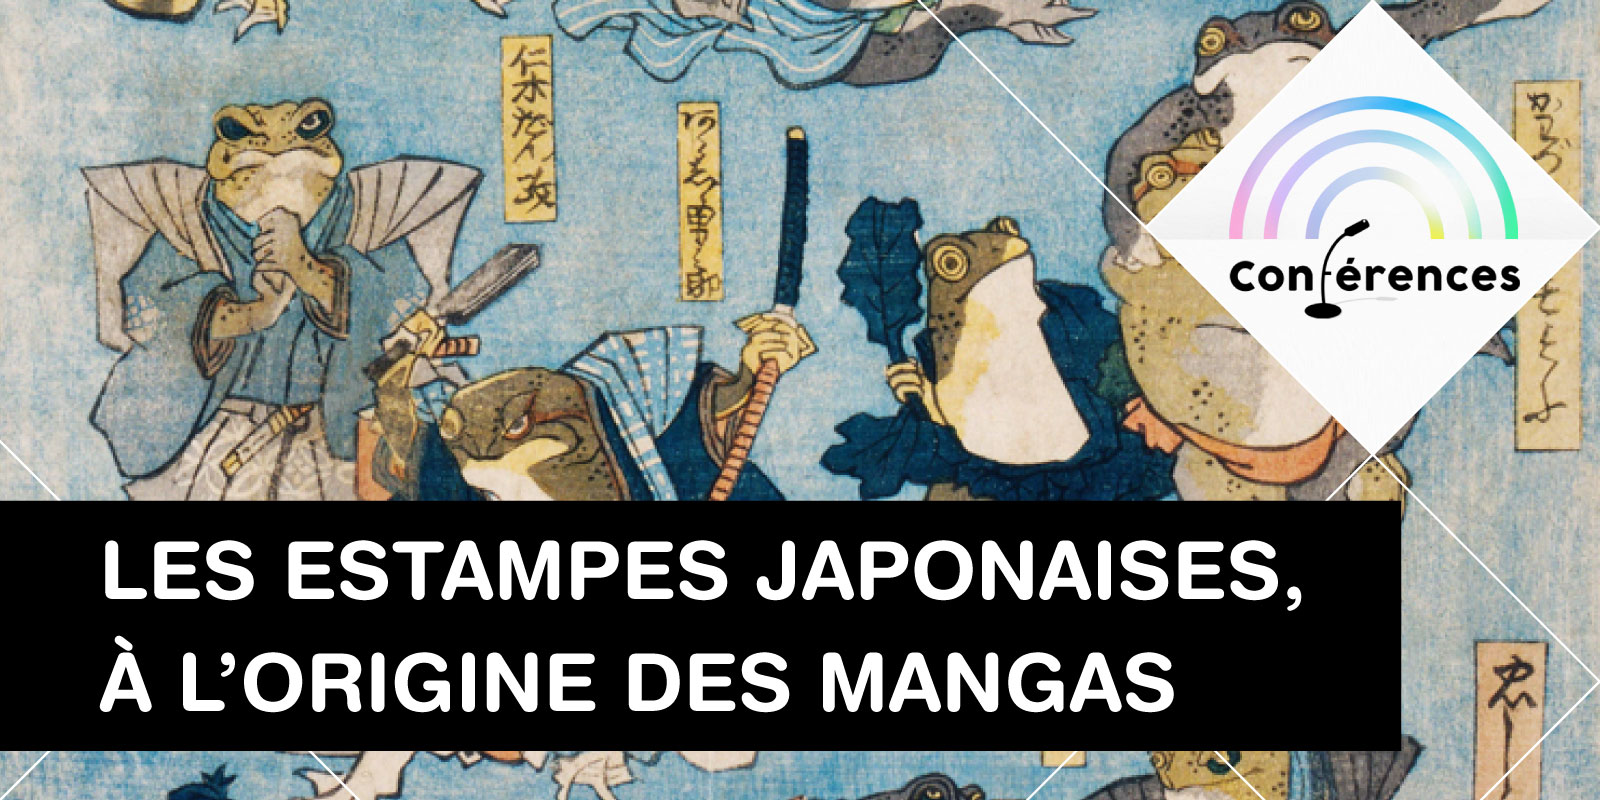 Les estampes japonaises, à l’origine des mangas